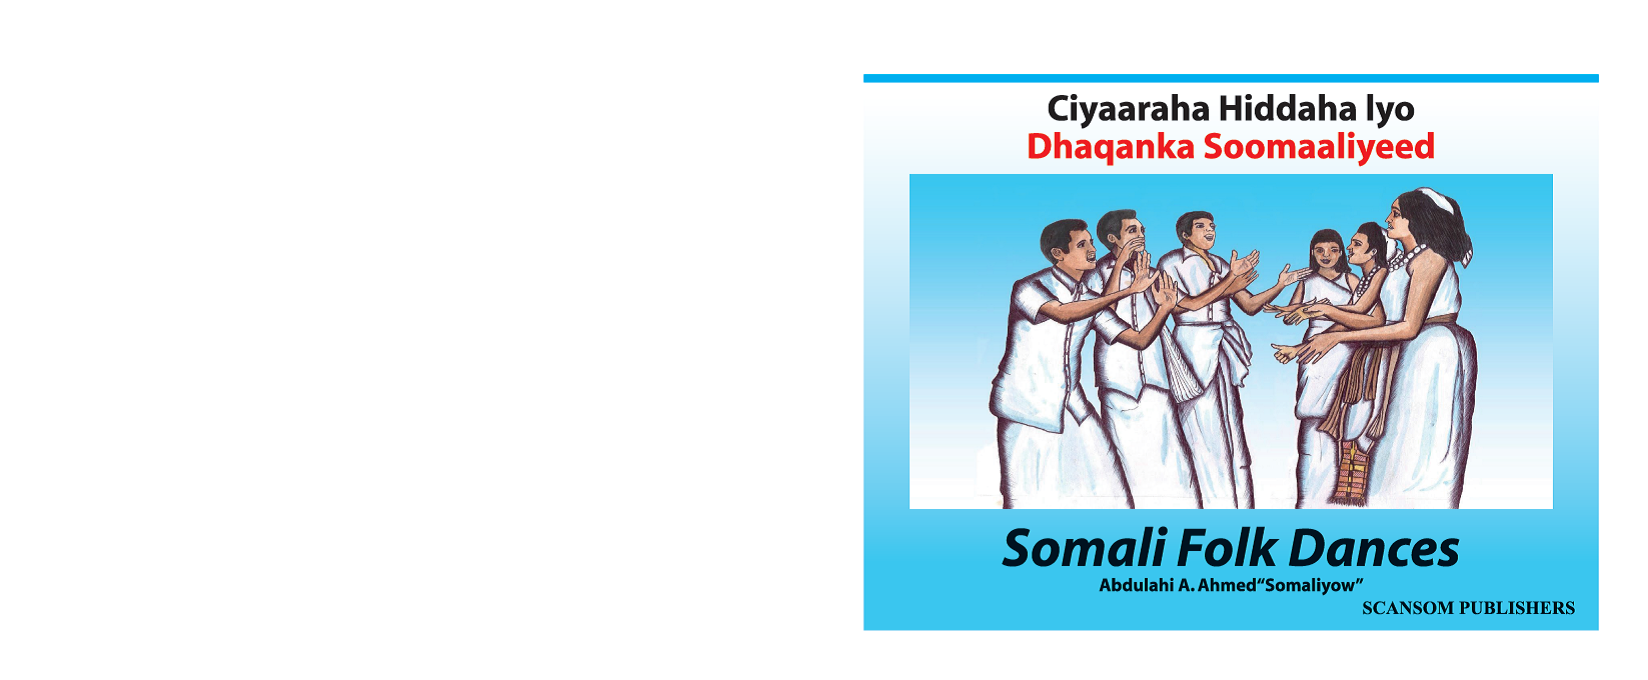 Ciyaaraha Hiddaha lyo (Dhaqanka Soomaaliyeed) (Somali Folk Dance